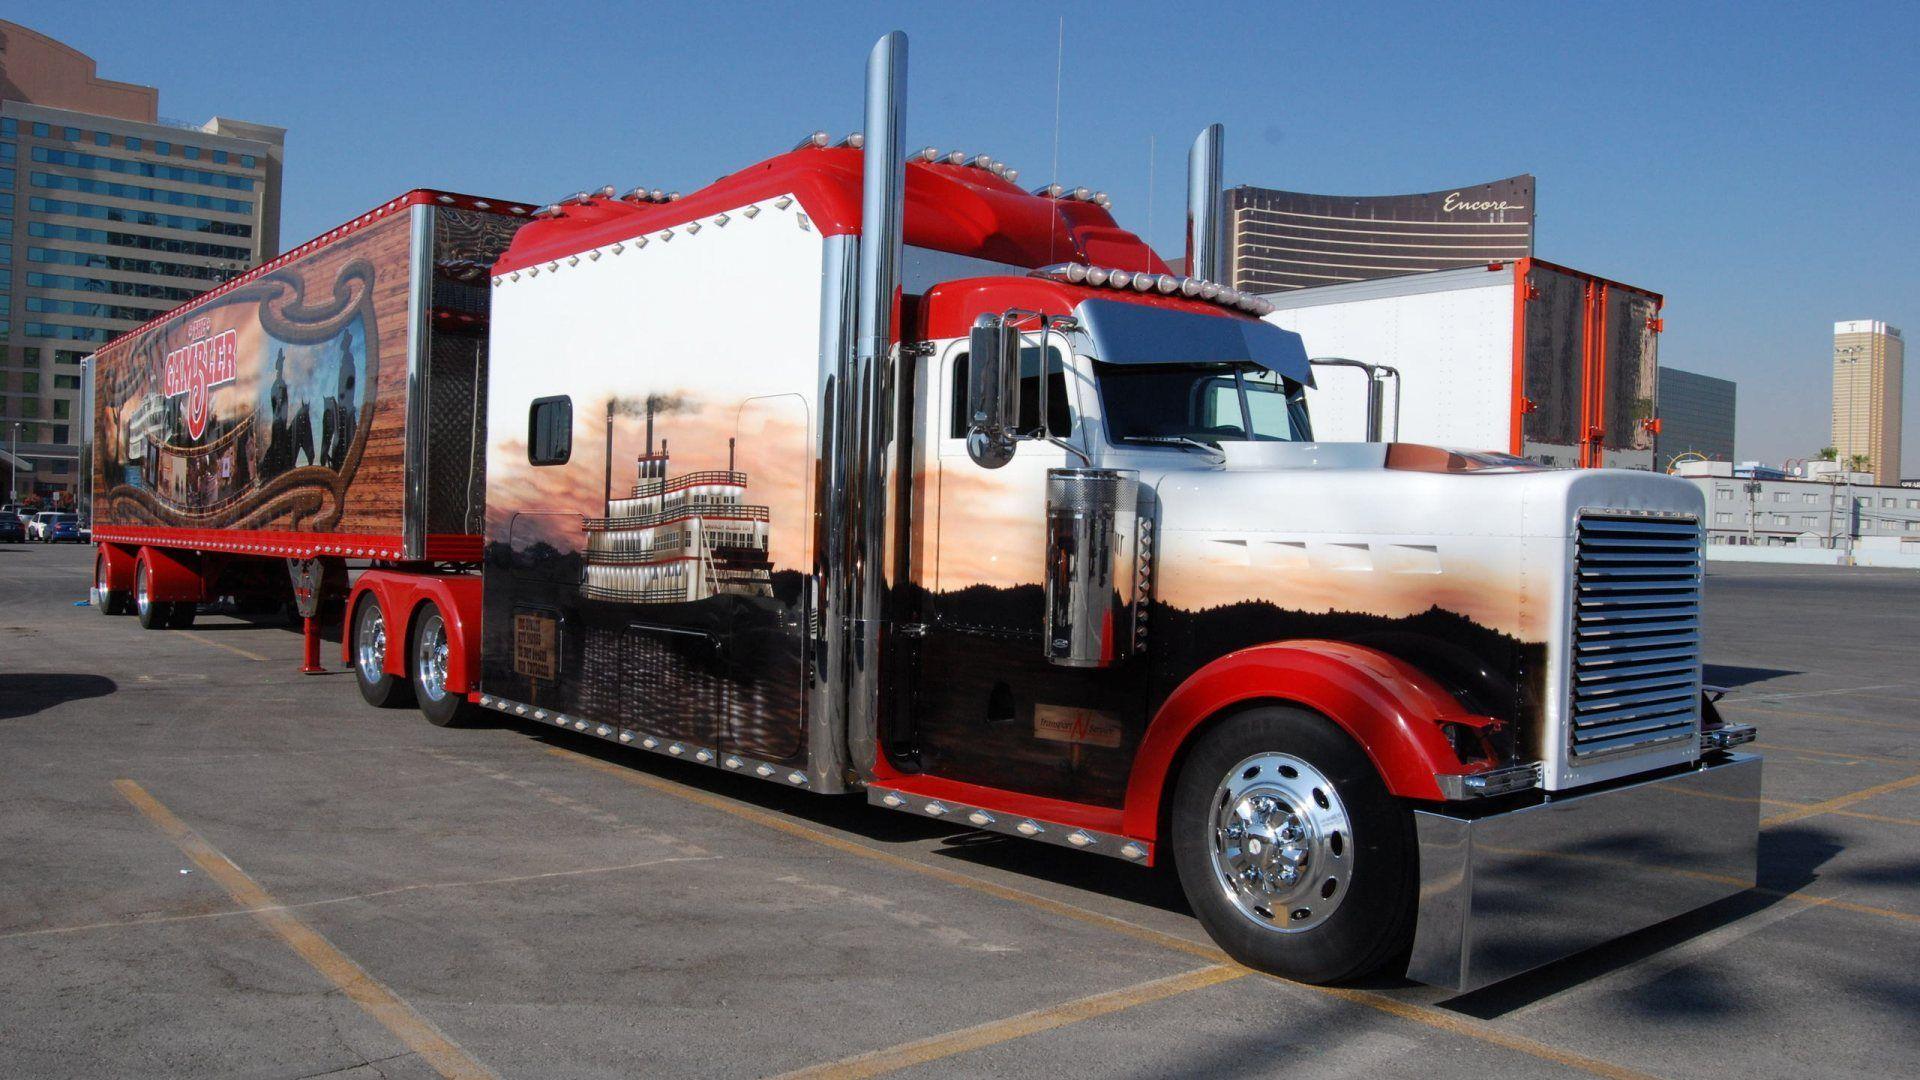 image For > Cool Semi Trucks Wallpaper. Trucks. Semi